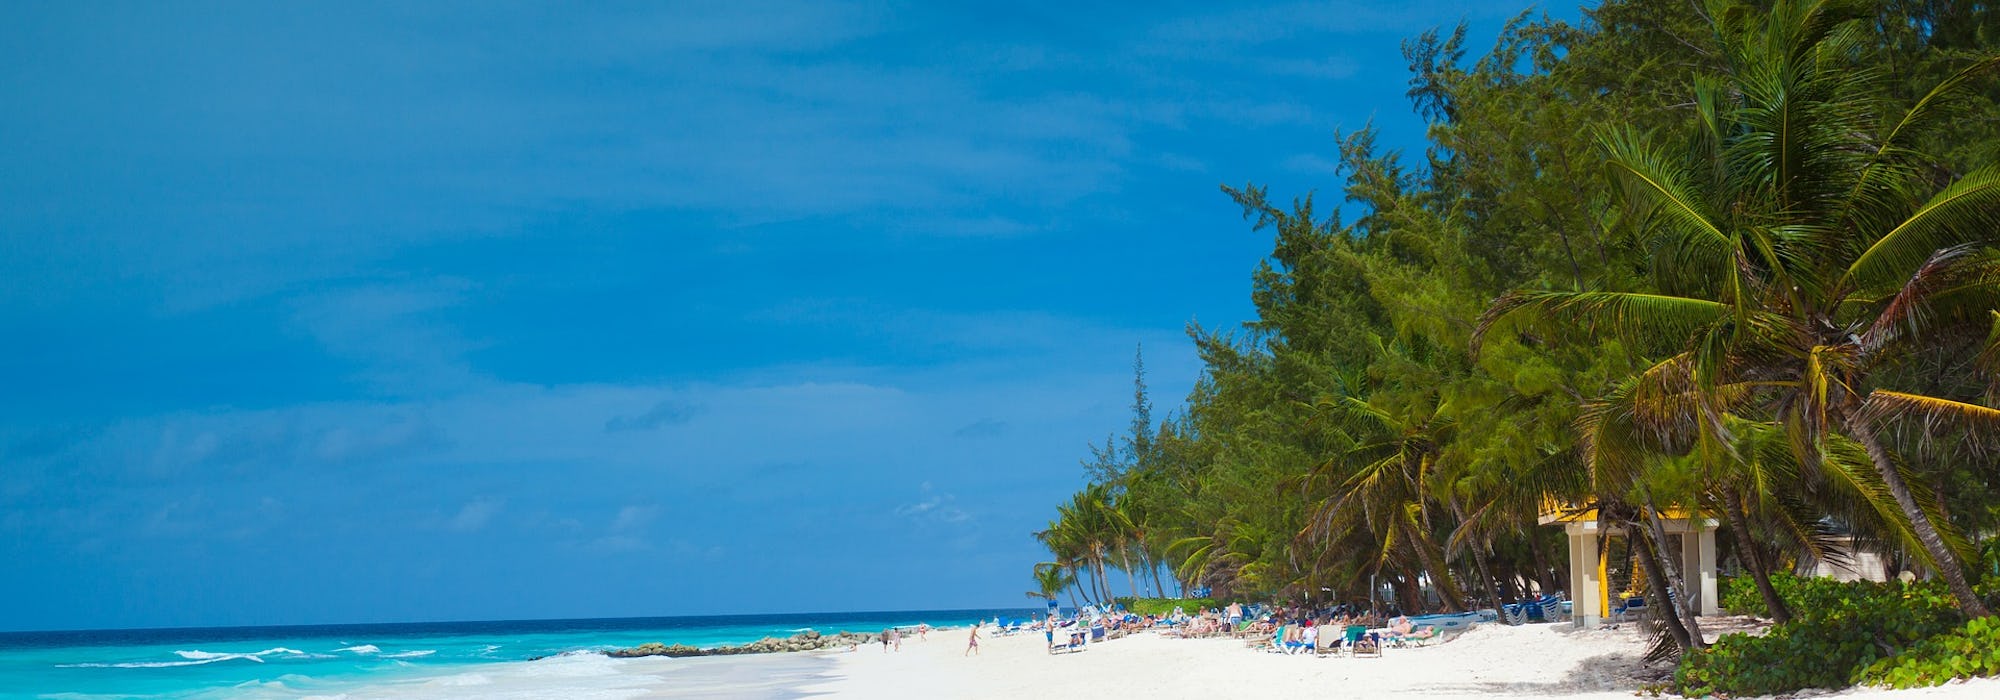 Bild på en snövit strand, palmer och ljusblått vatten i Barbados.